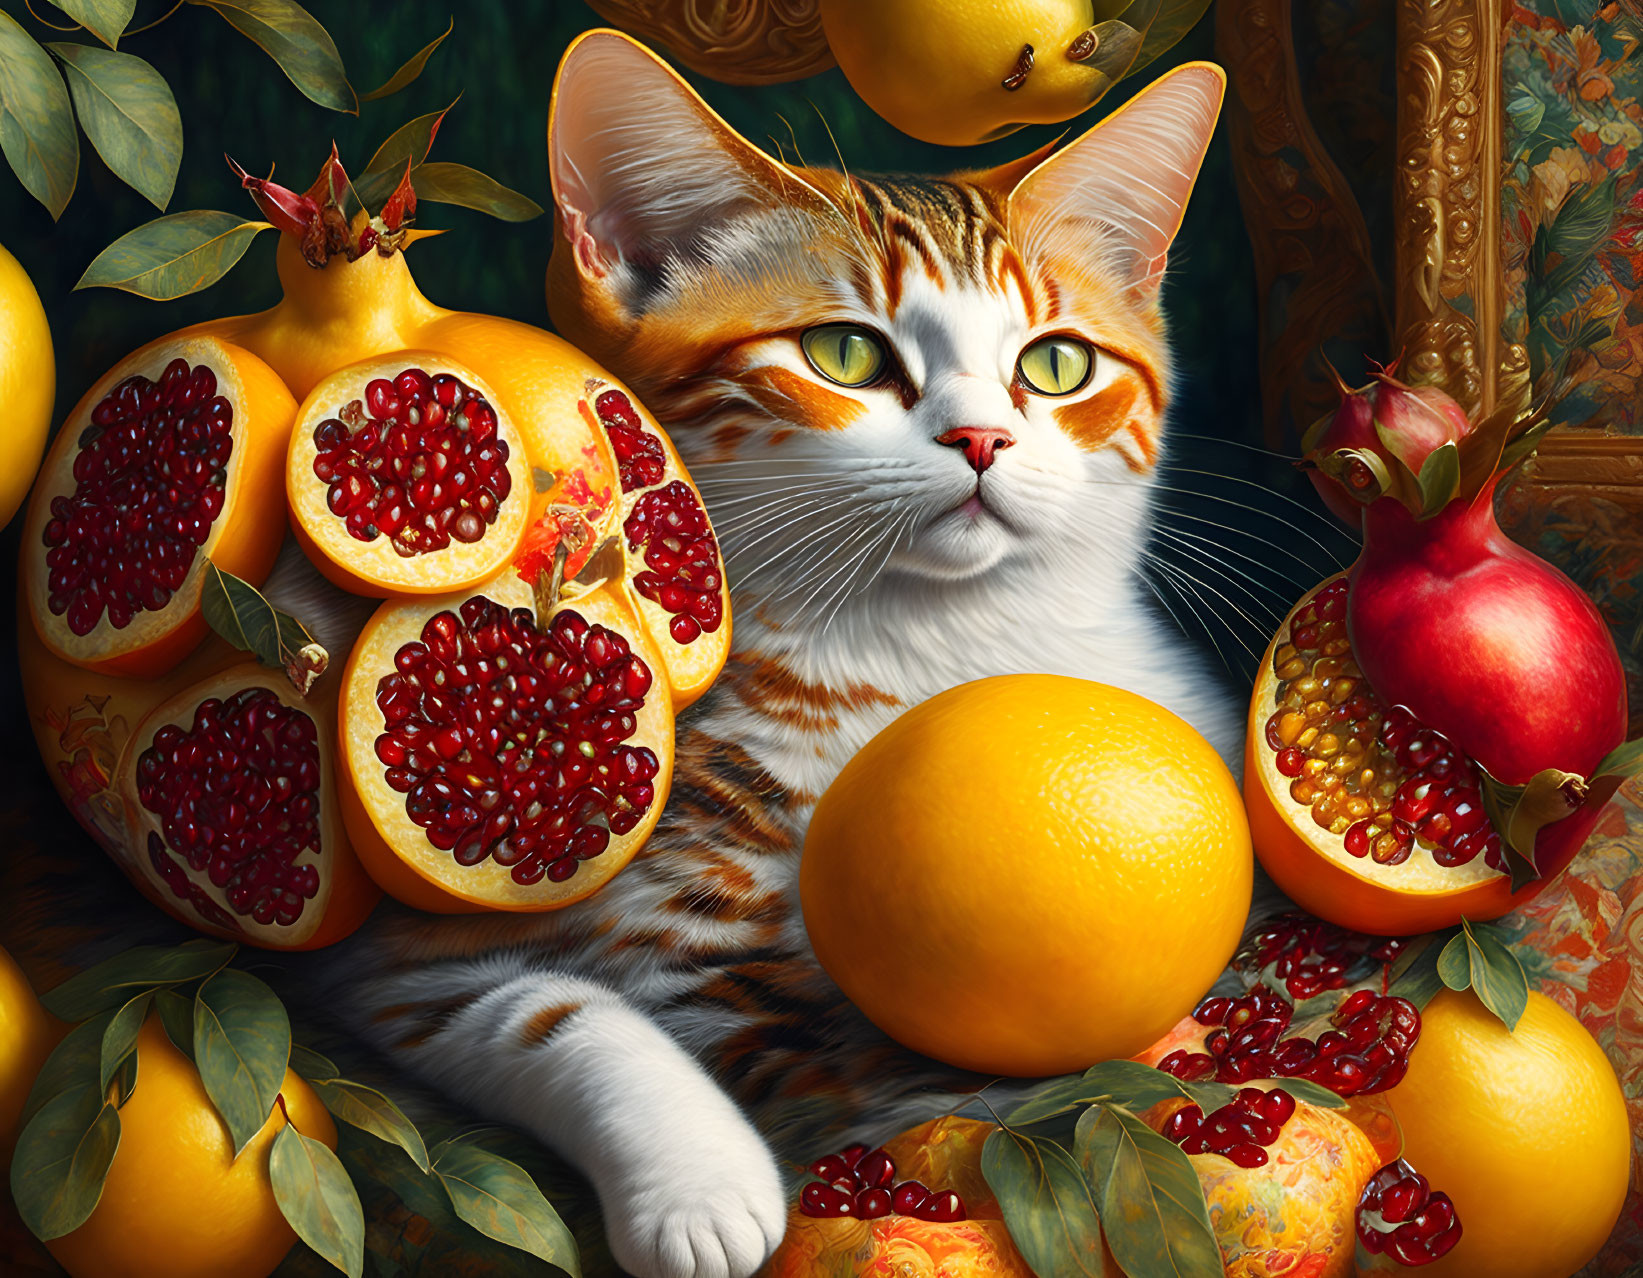 Cat driving a pomegranate, lemon, orange. Patchwor